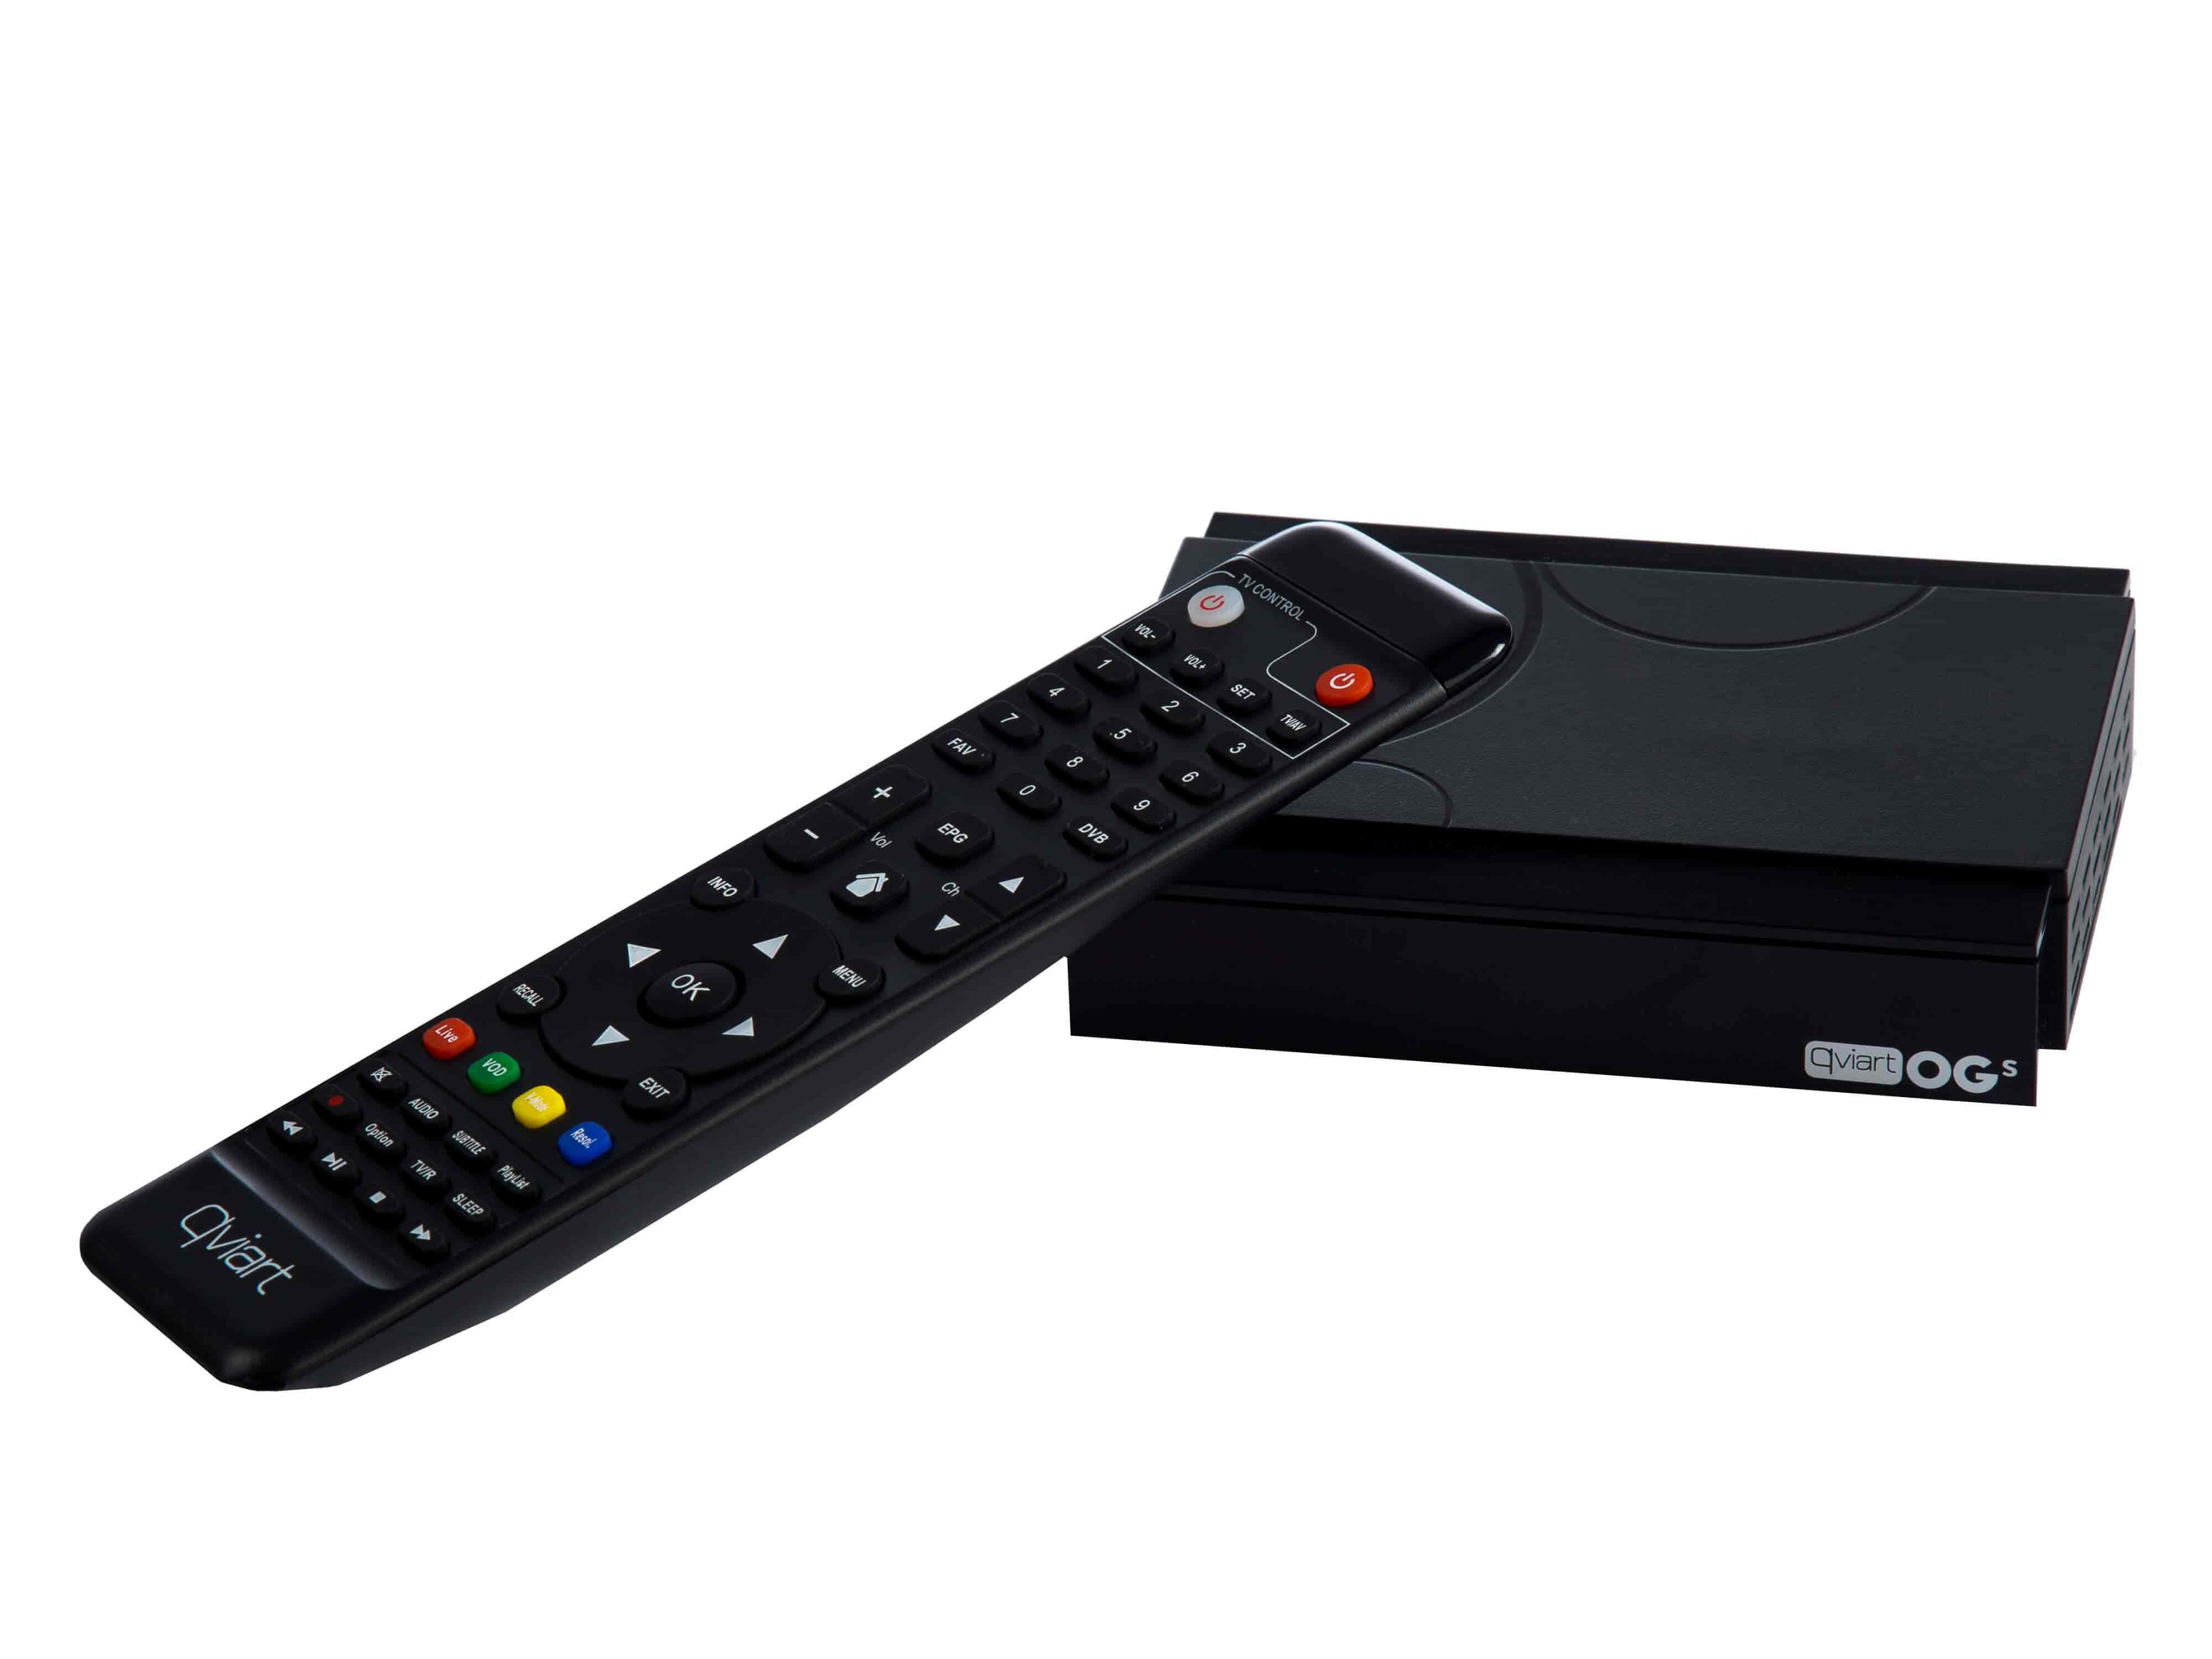 Kombineret IPTV TV boks med SAT modtager. Qviart OGs DVB-S2 - IPTV TV boks - SAT og IPTV i samme boks.